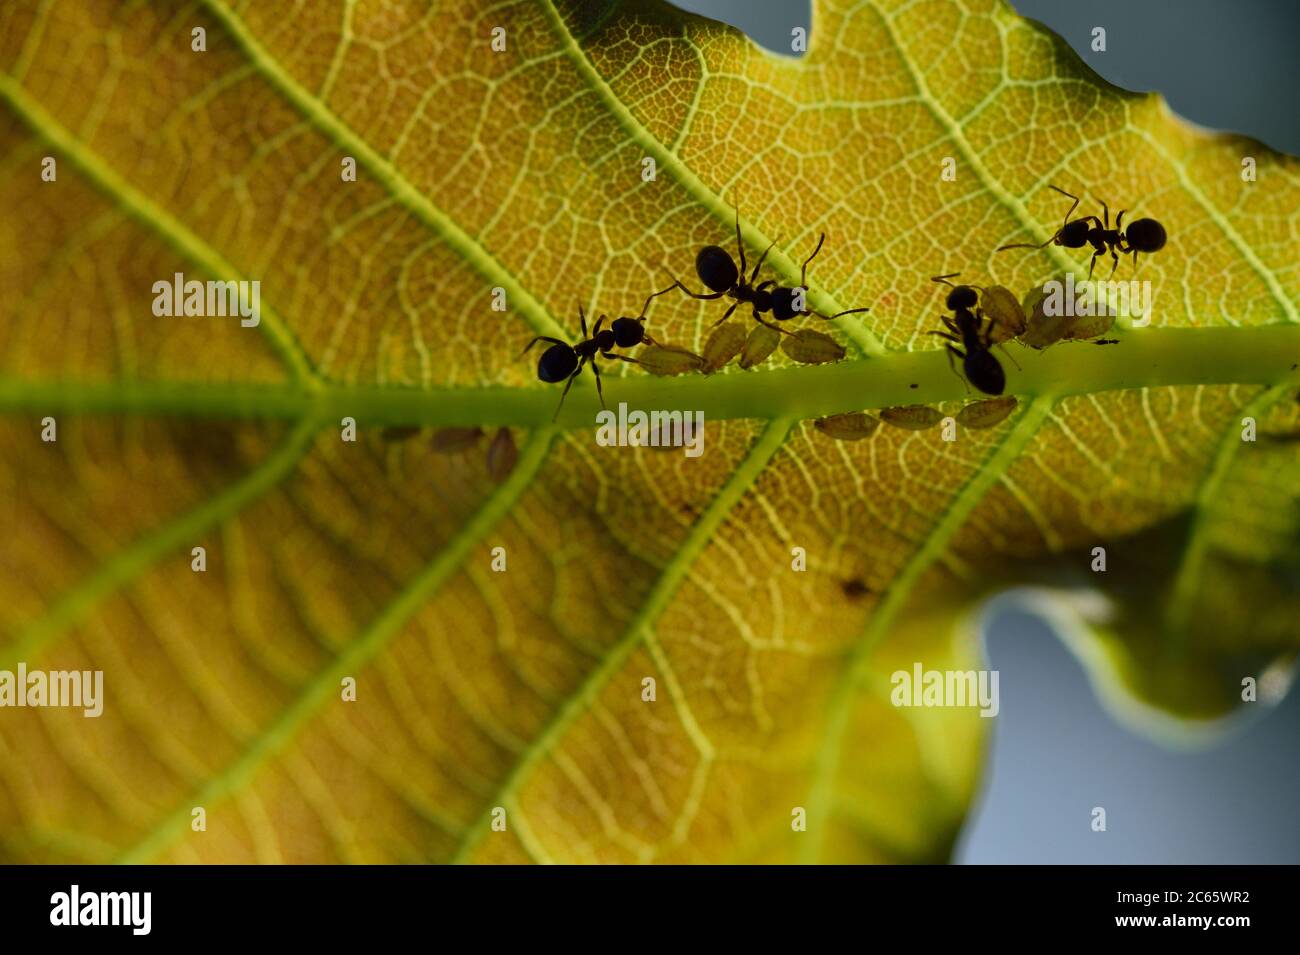 Fourmis à la recherche d'aphids sur une feuille de chêne, Parc National de la Suisse saxonne (Saechsische Schweiz), Europe, Europe centrale, Allemagne Banque D'Images